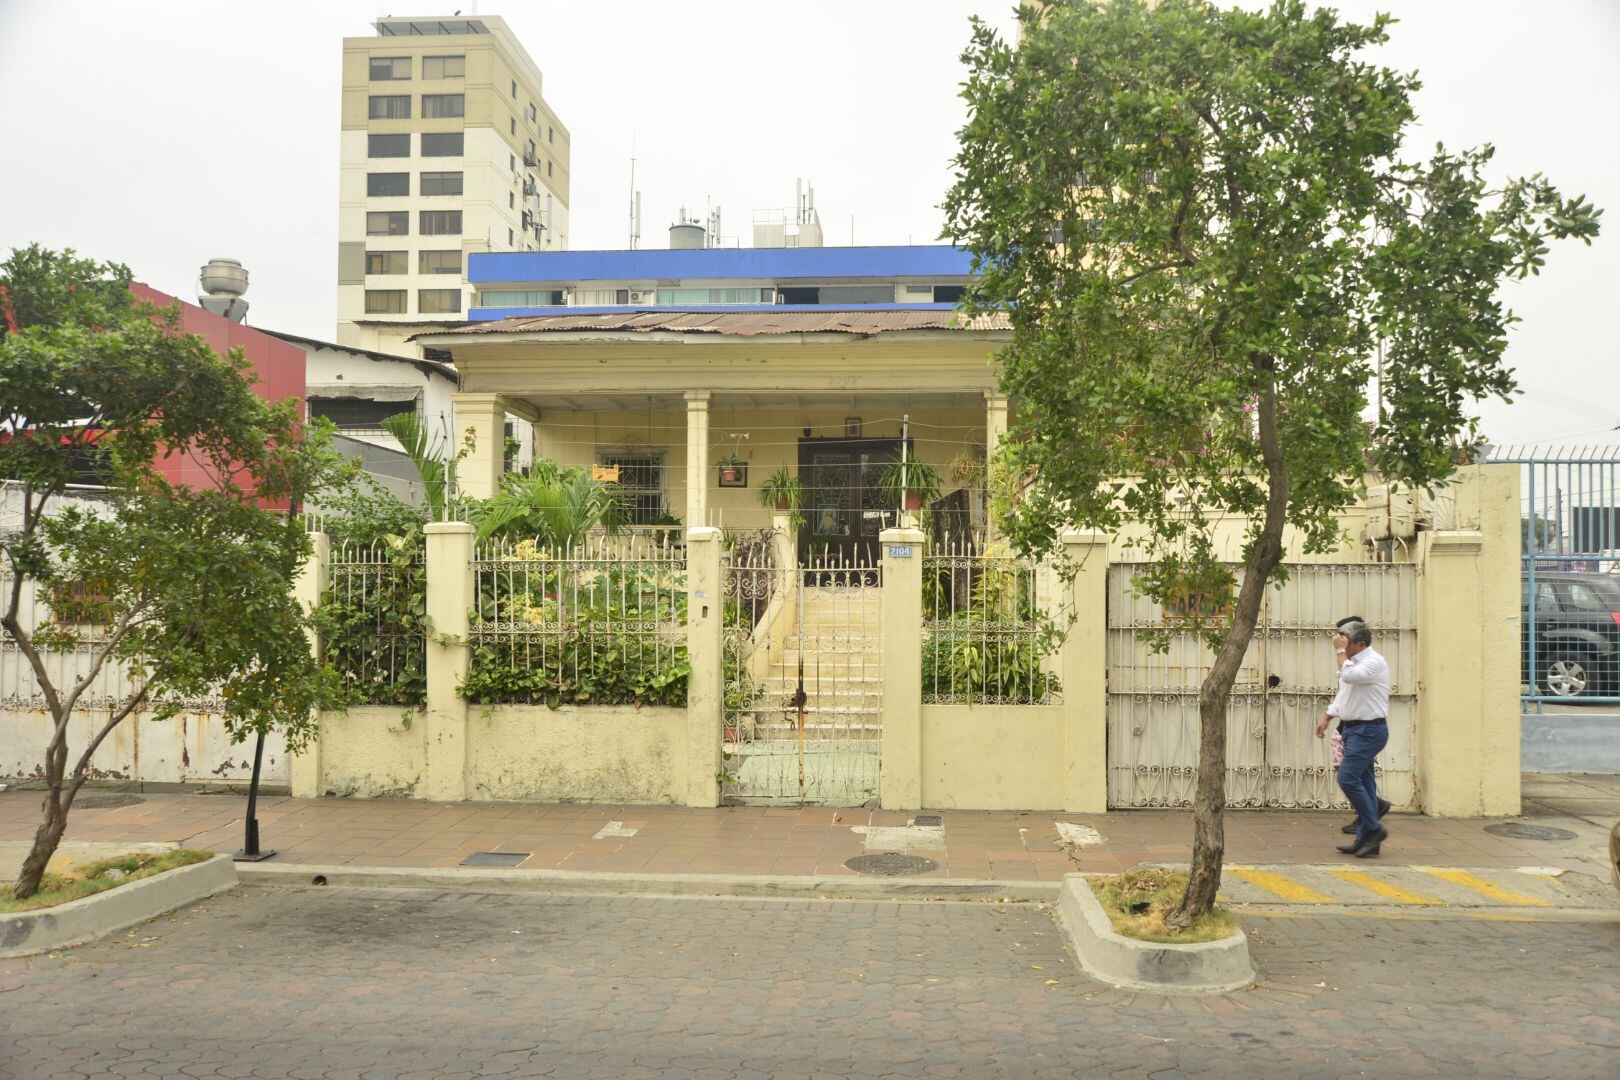 Uno de los dos chalets que tiene Guayaquil está en el barrio del Salado. Perteneció al doctor Carlos Puig Vilasar, aquí vivió la periodista Chichí Puig de Lange (9 de Octubre y Tulcán).